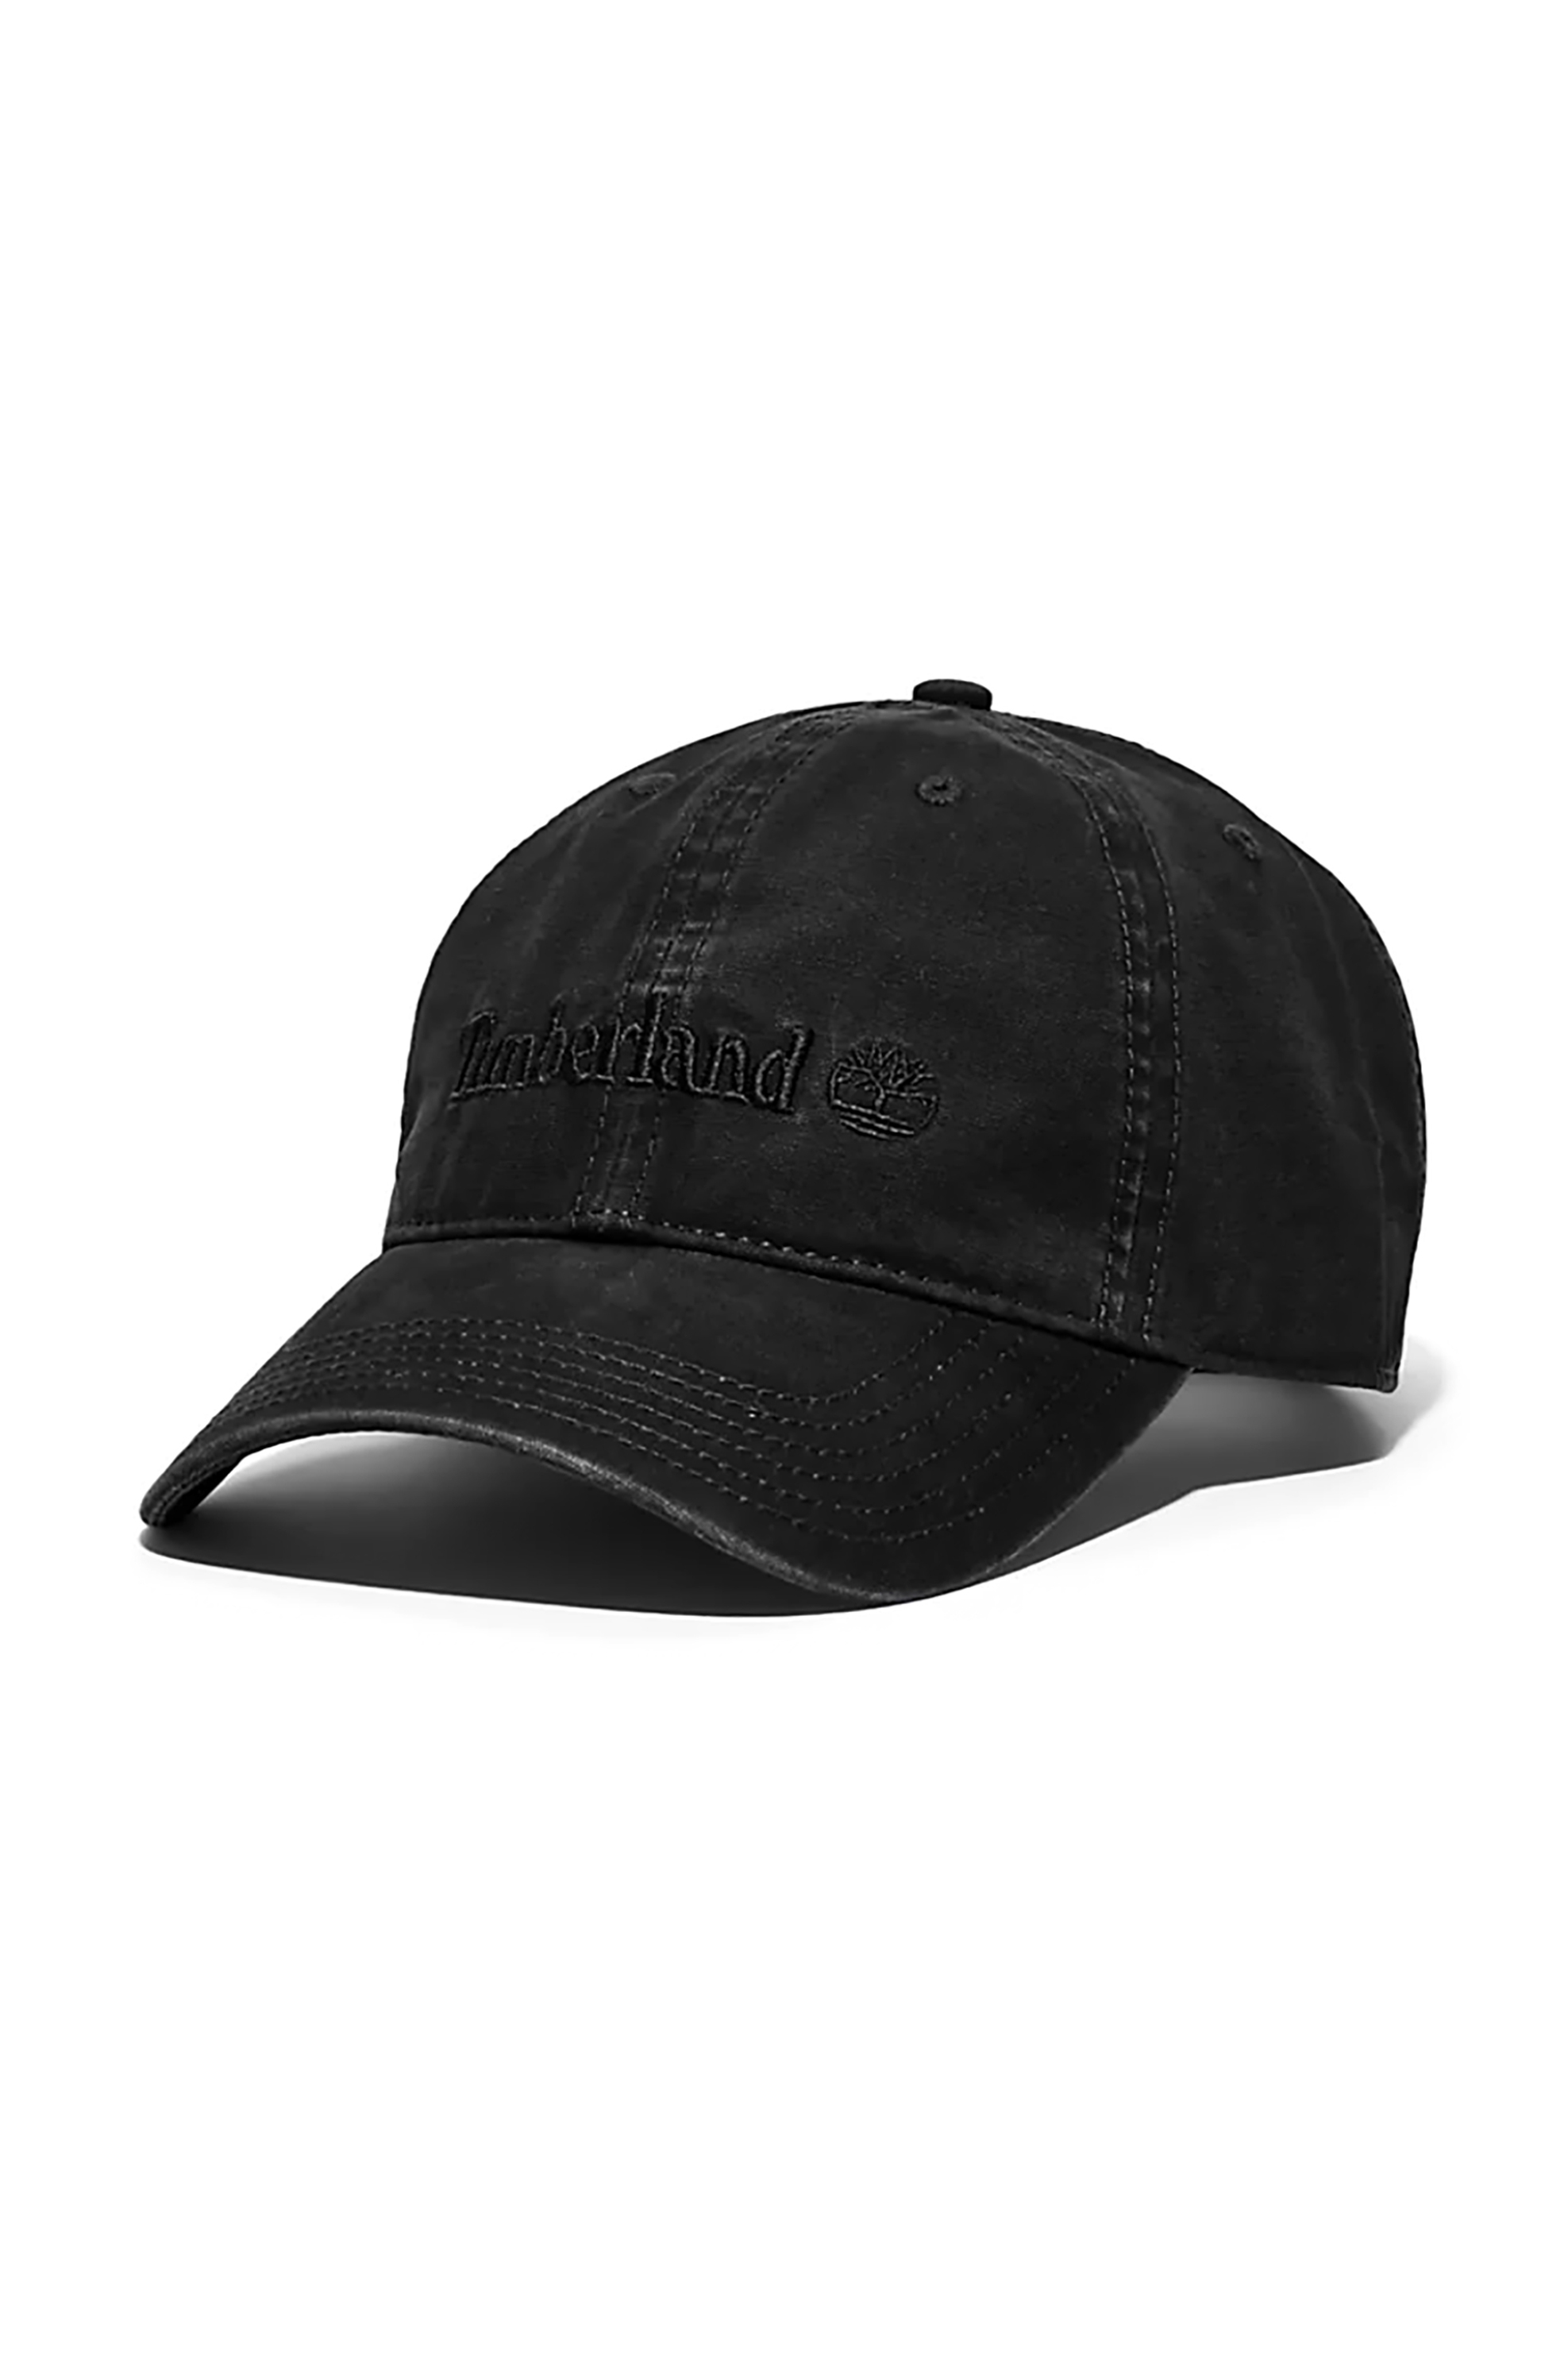 Ανδρική Μόδα > Ανδρικά Αξεσουάρ > Ανδρικά Καπέλα & Σκούφοι Timberland ανδρικό καπελο jockey με κεντημένο λογότυπο "Cooper Hill" - TB0A1F540011 Μαύρο